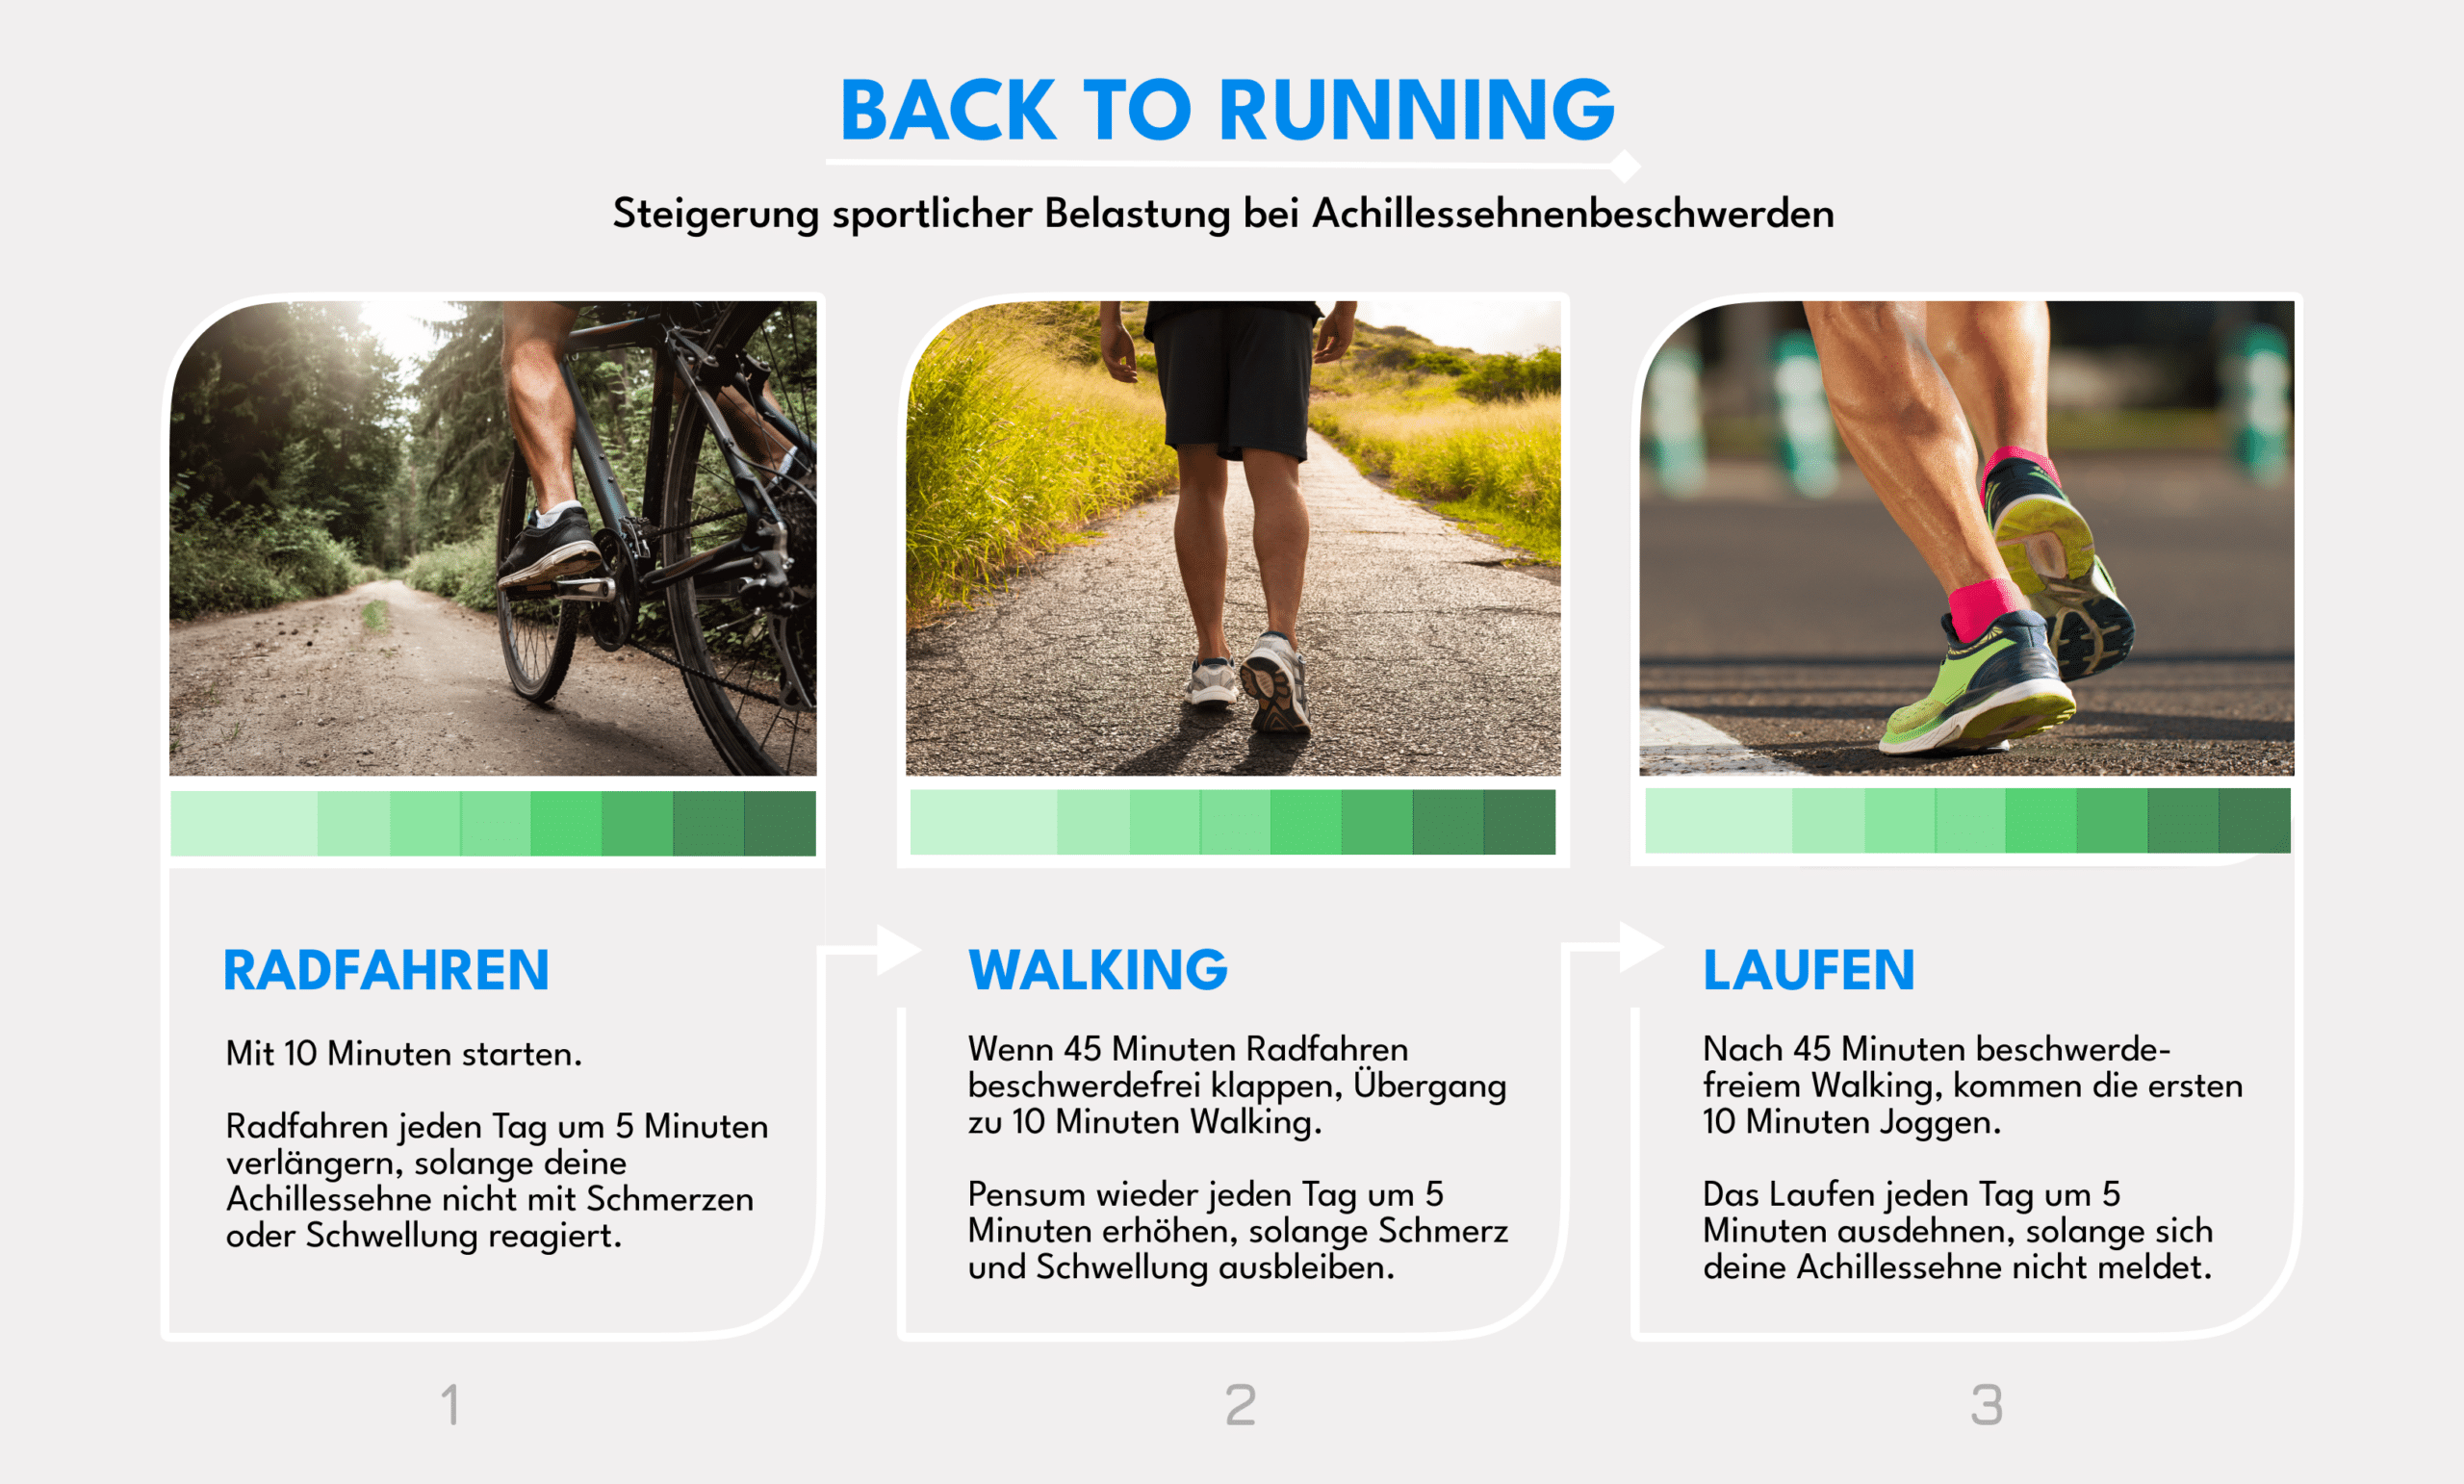 Grafik zu Sport bei Achillessehnenschmerzen und Weg zurück zum Lauftraining über Radfahren und Walking